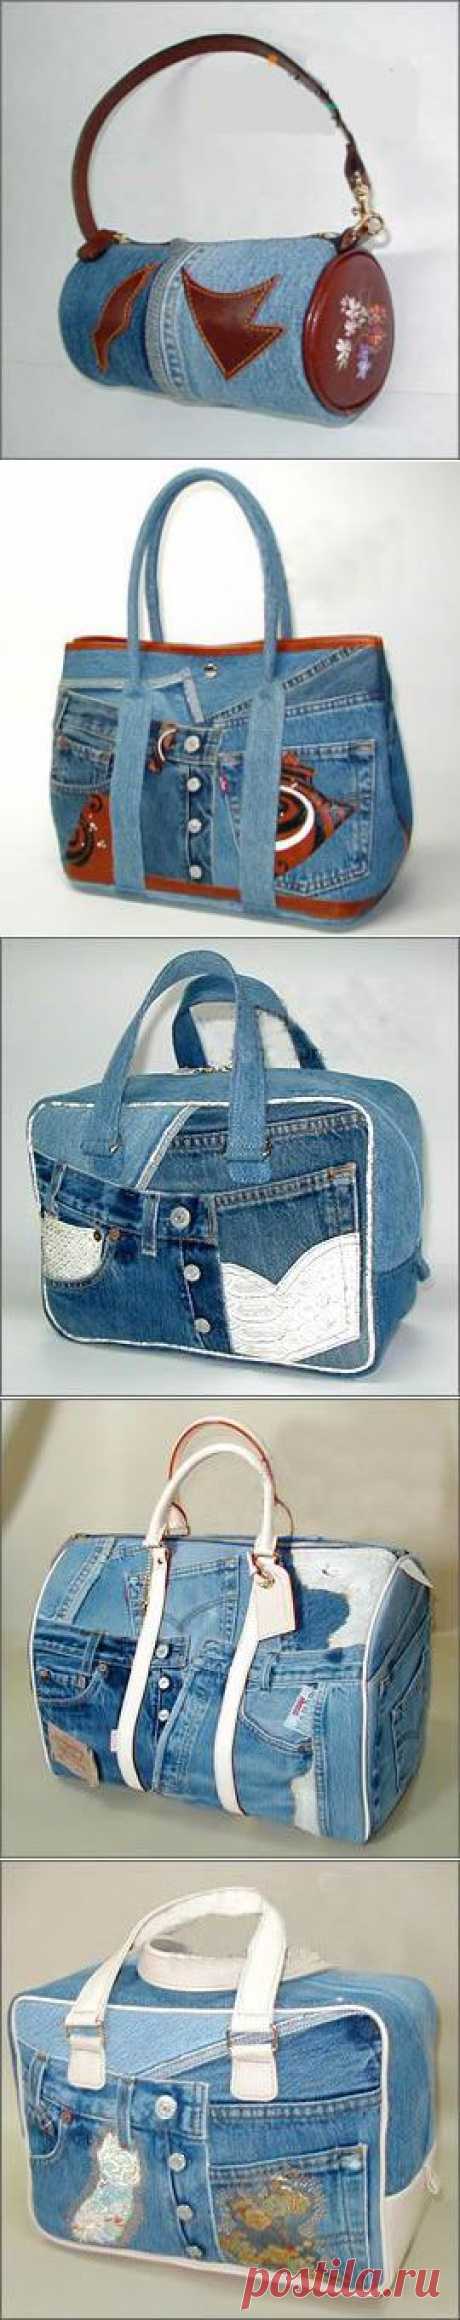 Идеи сумок из старых джинсов.